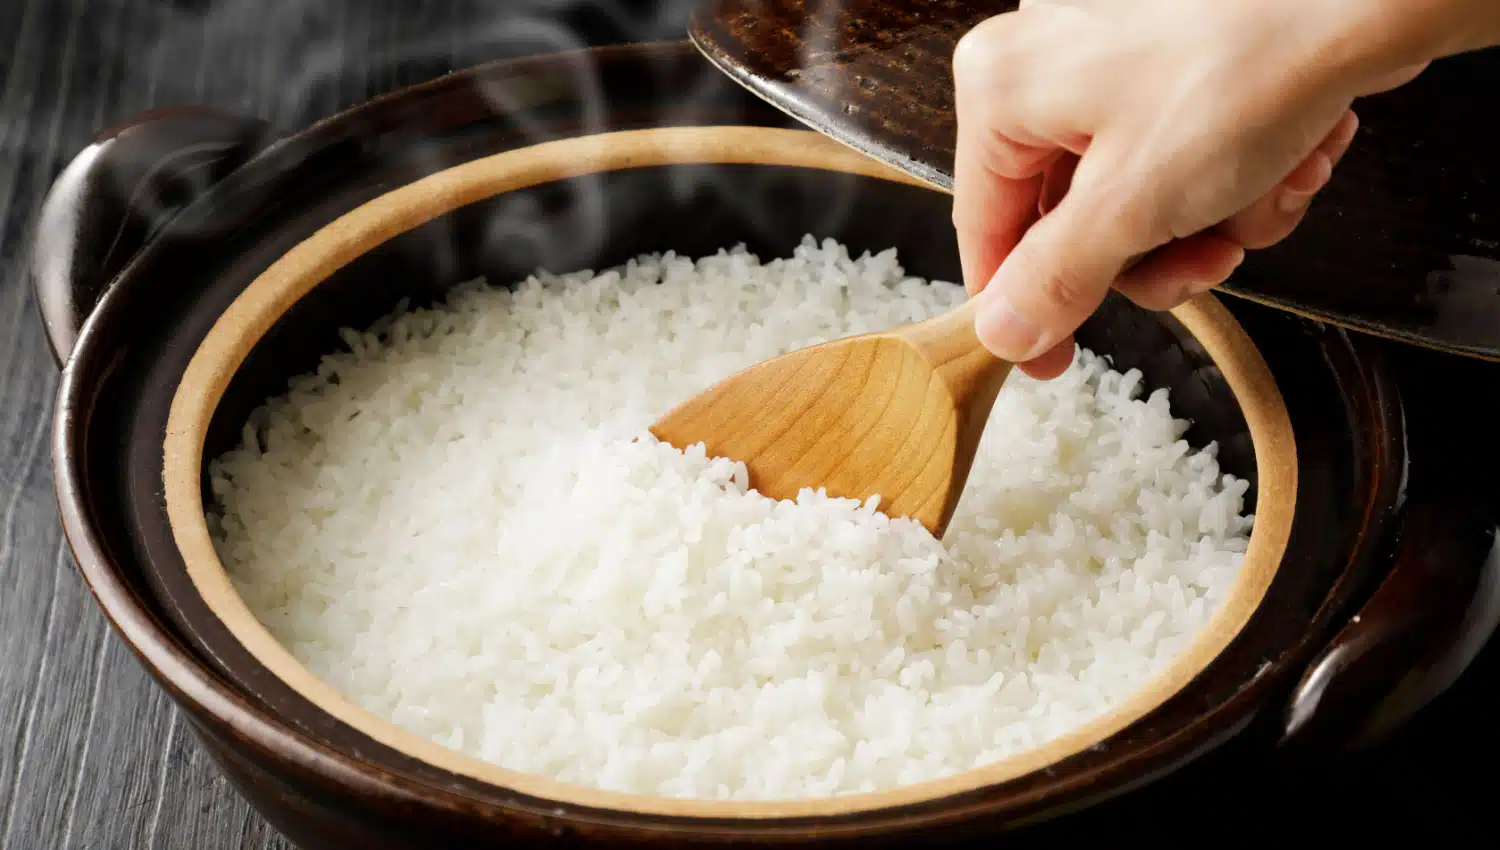  La formule du riz parfait : la science explique le pouvoir de l'eau froide et bouillante